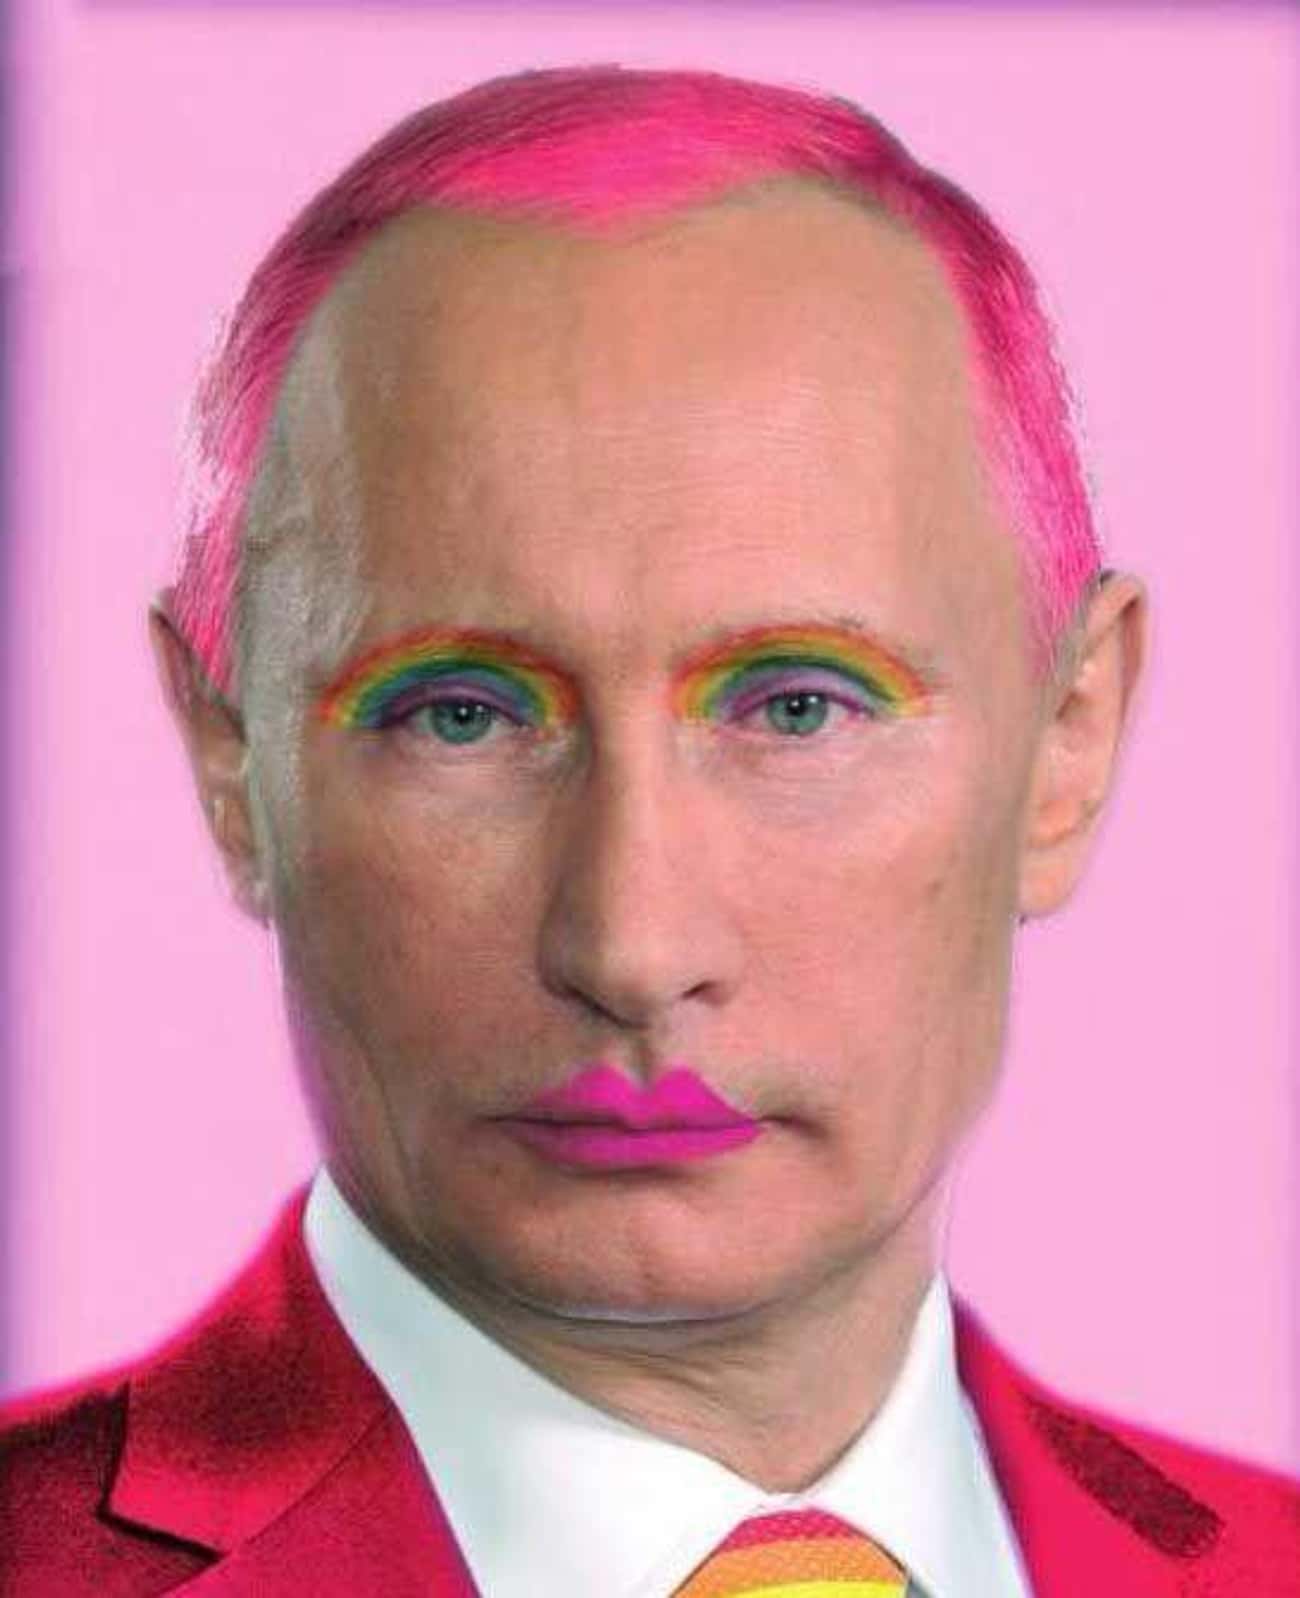 Владимир Путин портрет